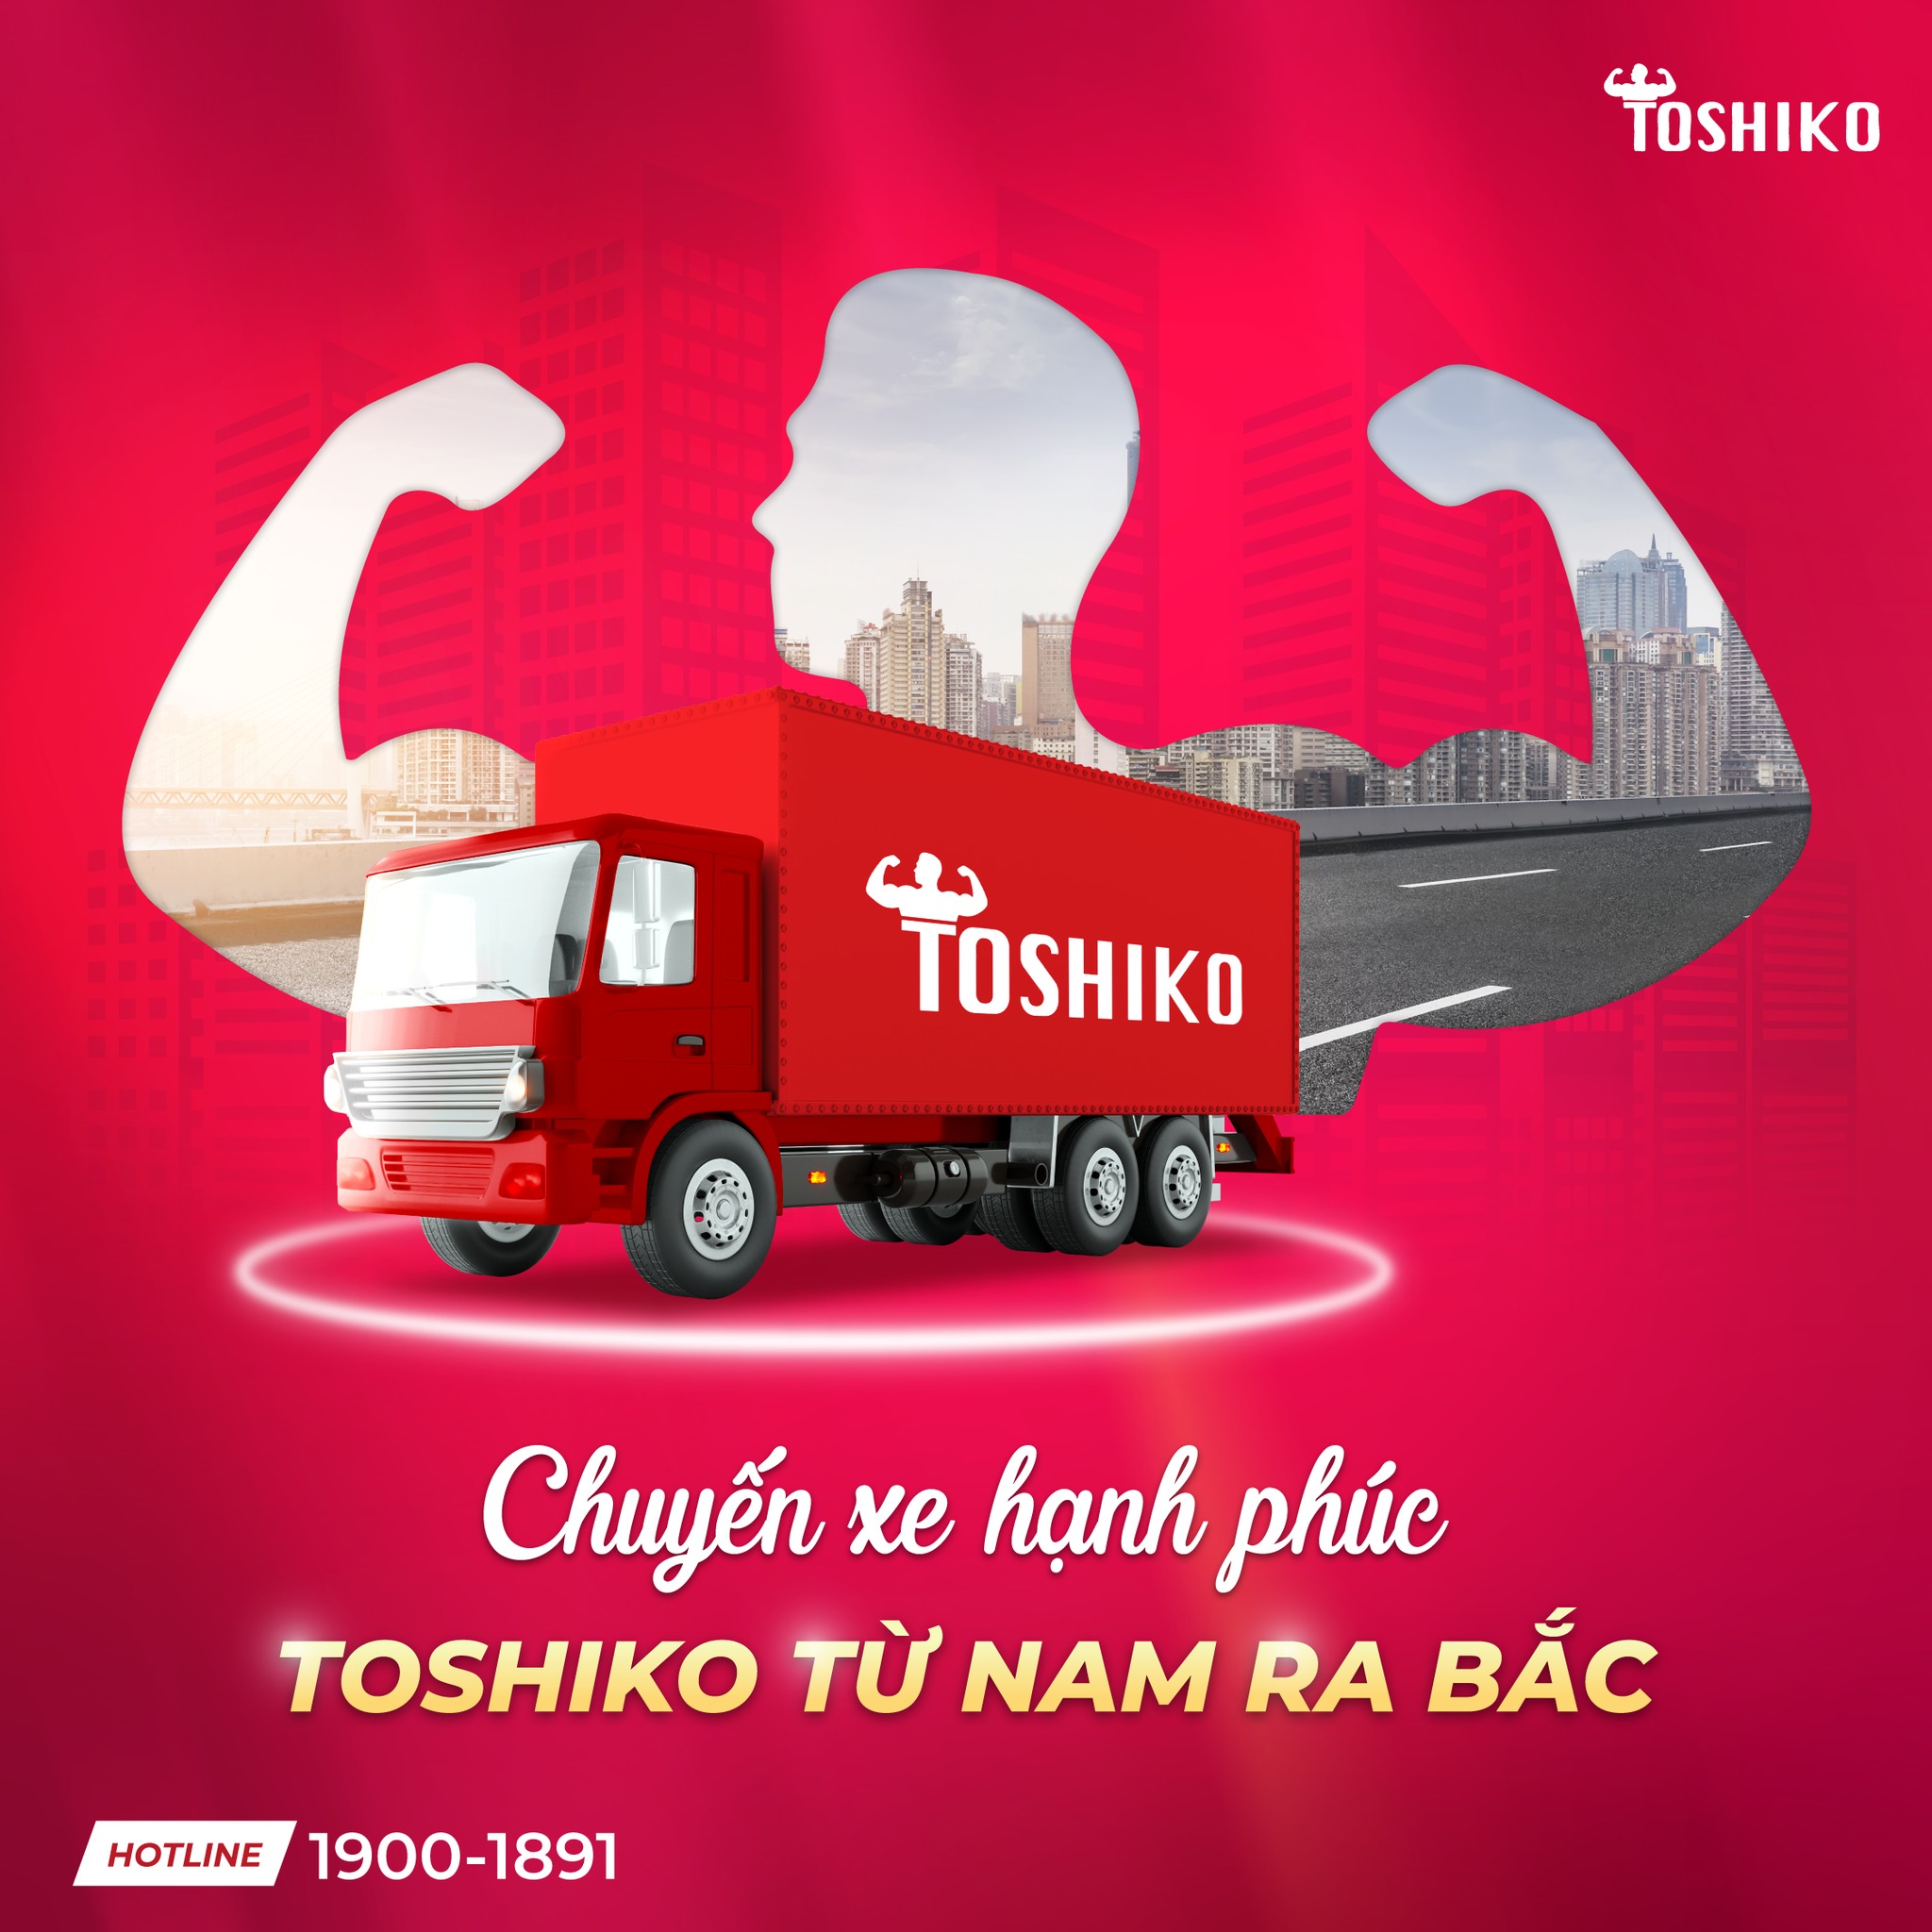 Chính sách giao hàng của Toshiko